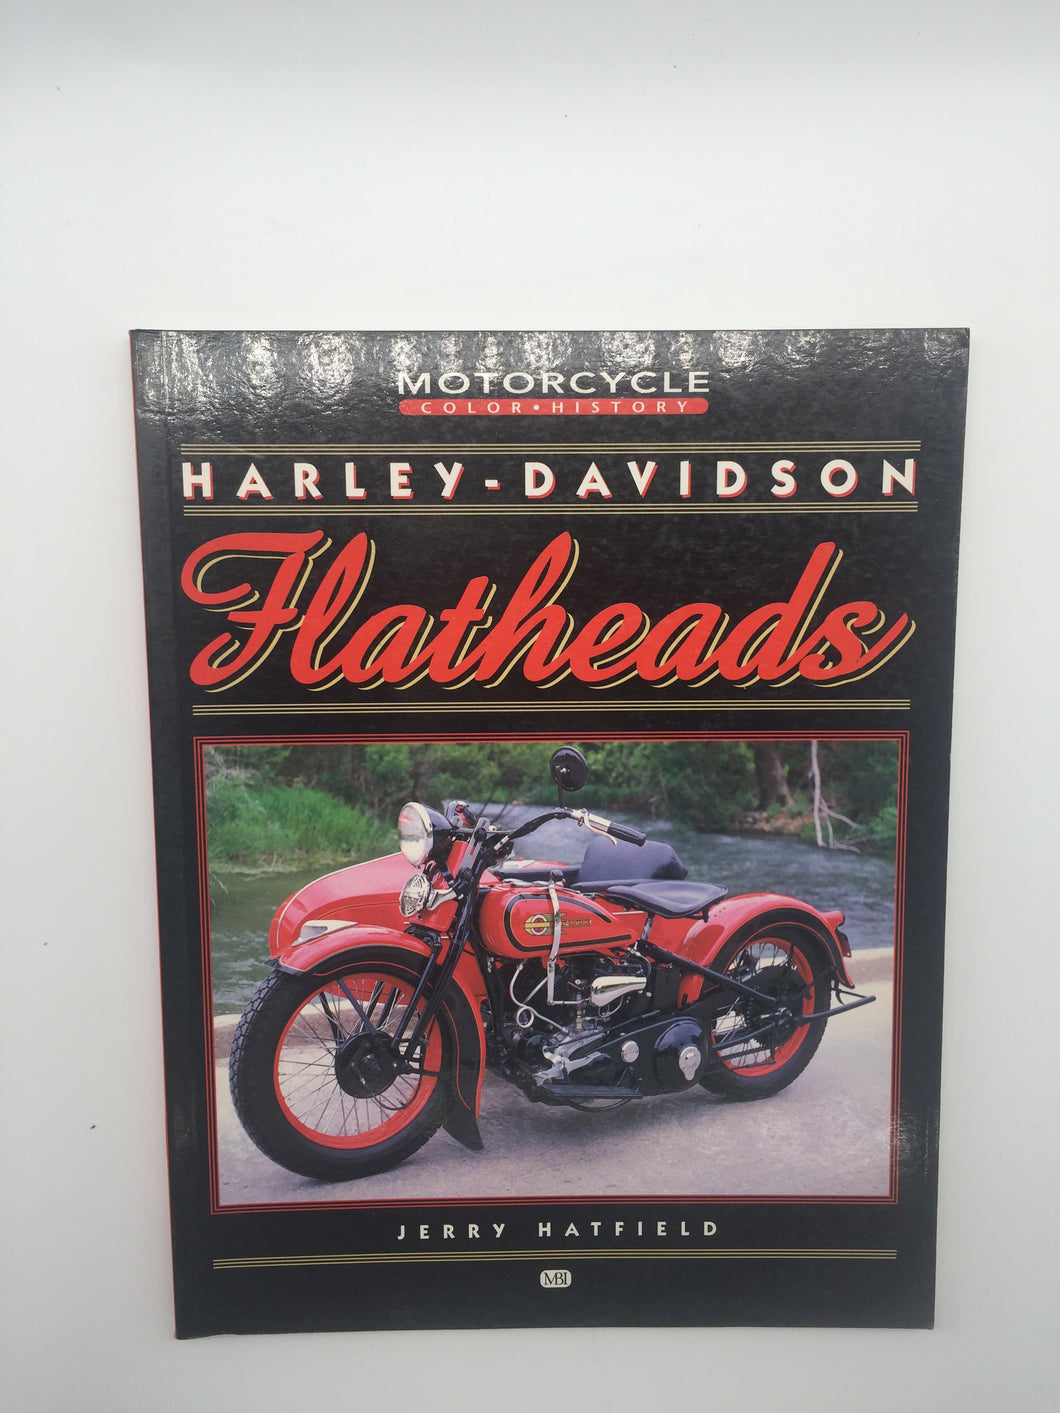 Harley-Davidson Flatheads